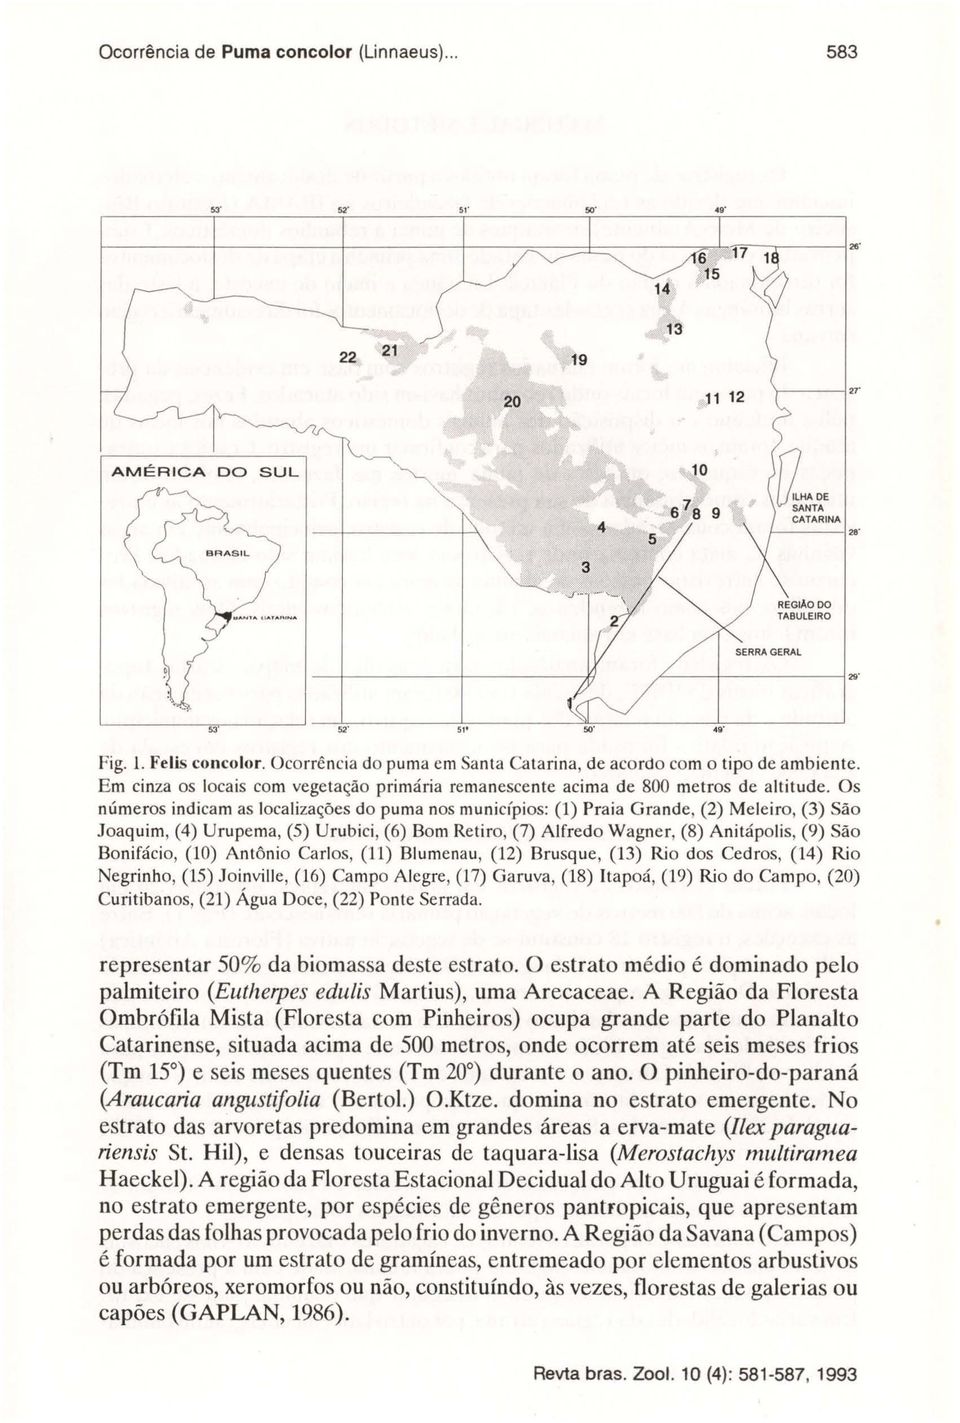 Os números indicam as localizações do puma nos municípios: (1) Praia Grande, (2) Meleiro, (3) São Joaquim, (4) Urupema, (5) Urubici, (6) Bom Retiro, (7) Alfredo Wagner, (8) Anitápolis, (9) São